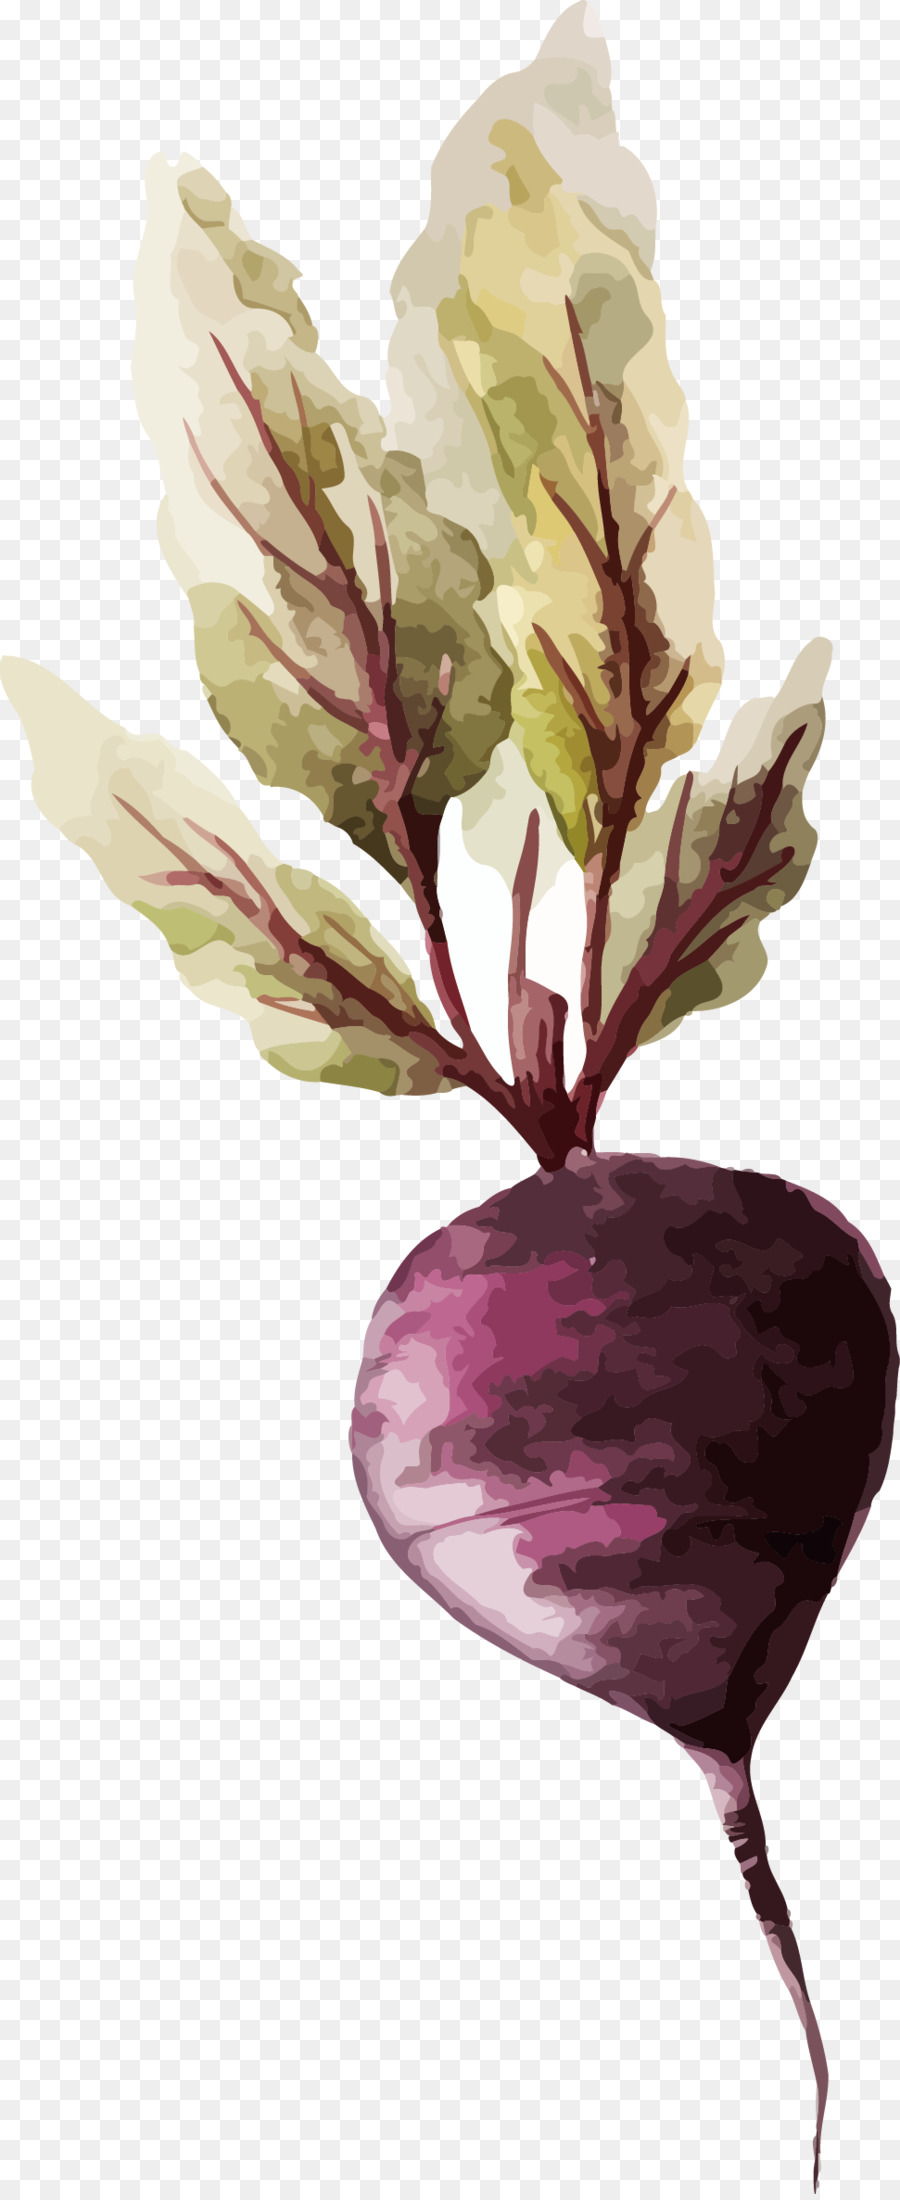 La pittura ad acquerello di Verdure Disegno, Illustrazione - carota